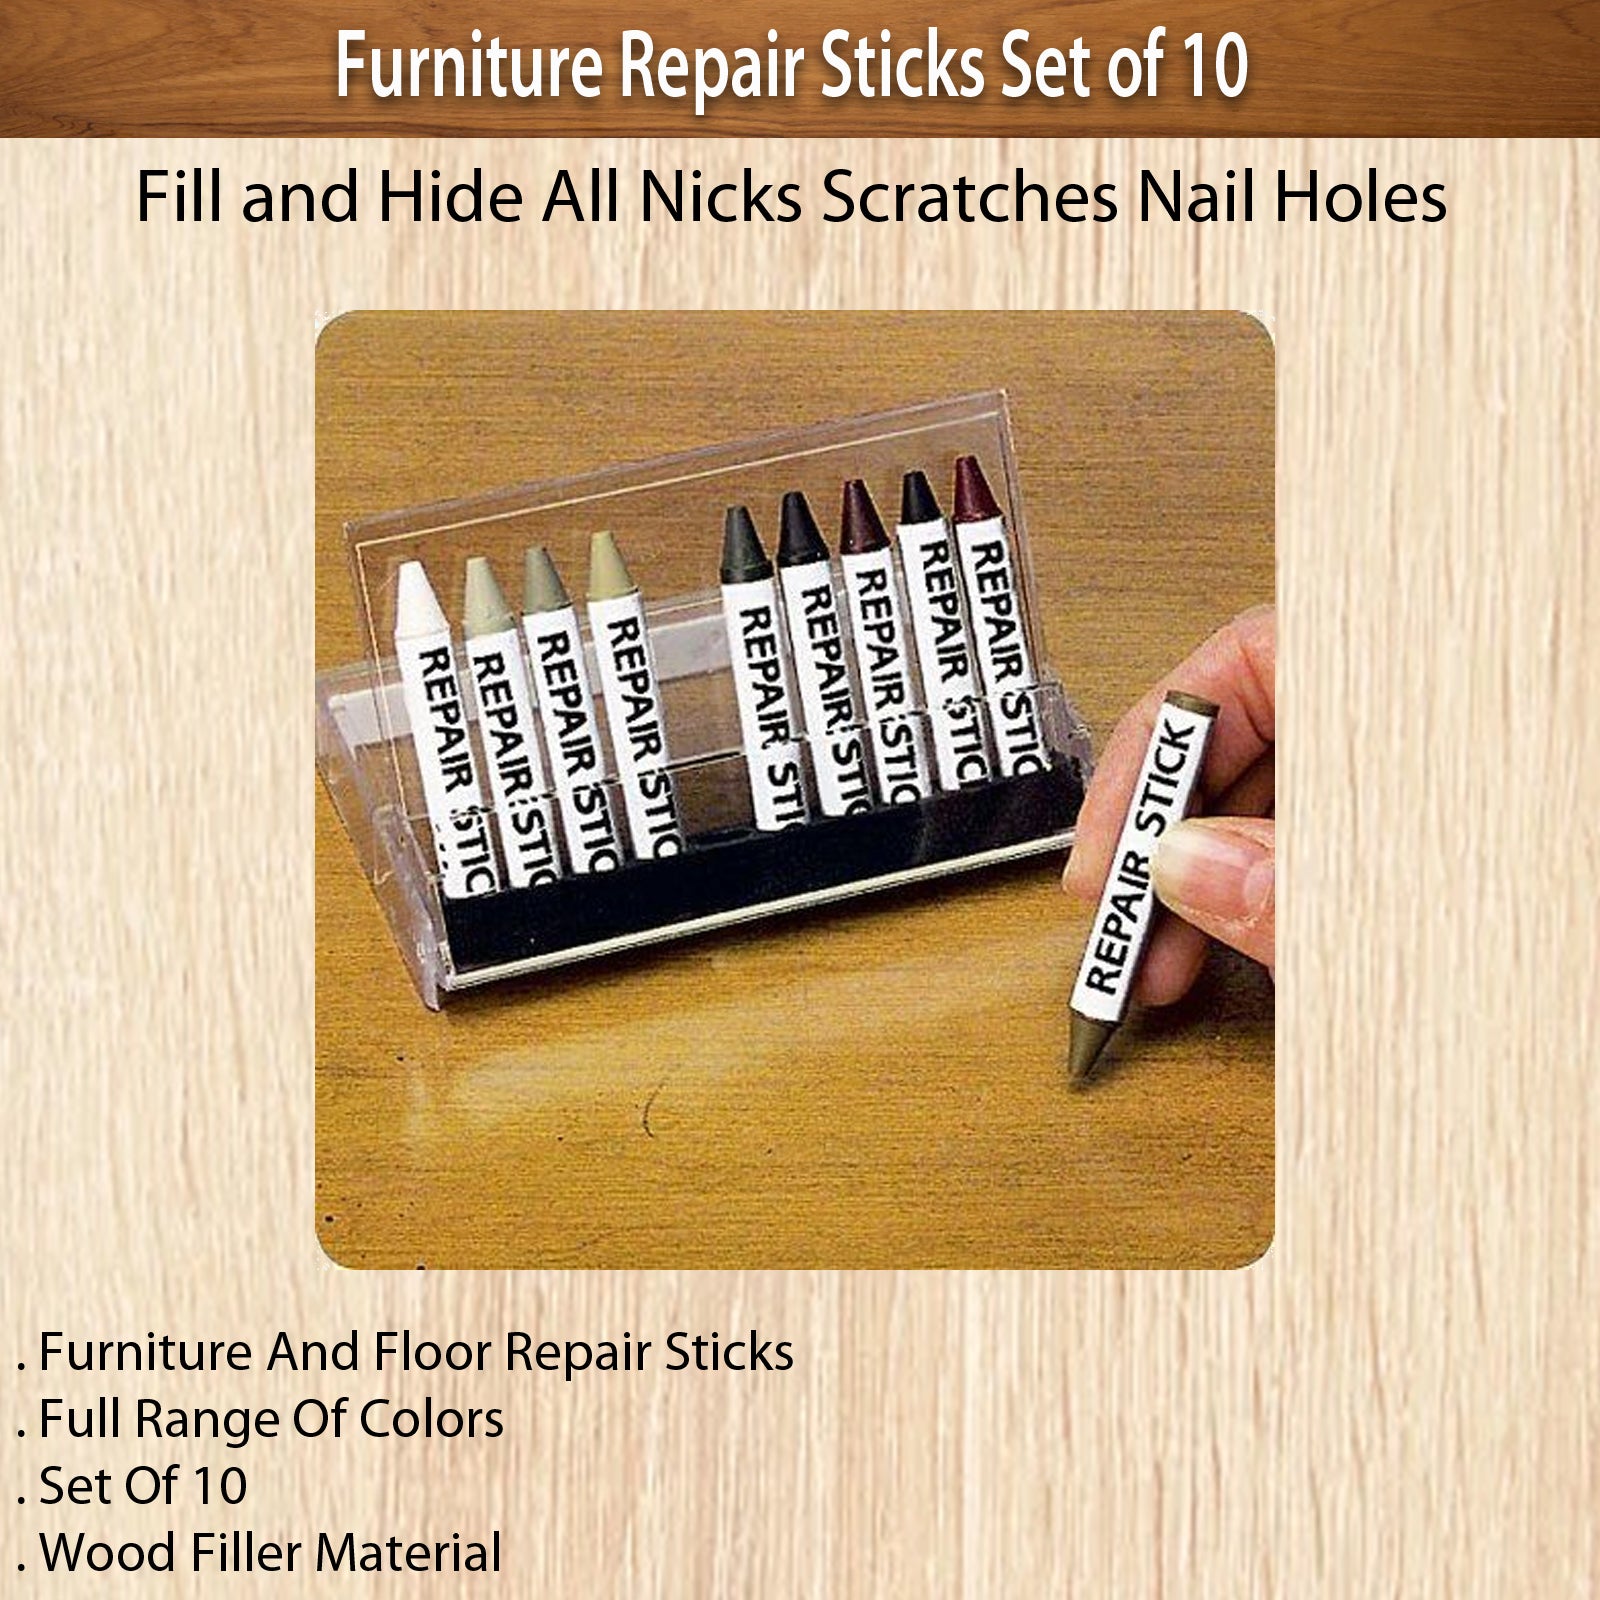 Liquid Leather Bumper Repair Kit- for Colored Bumper Repair (20-902)